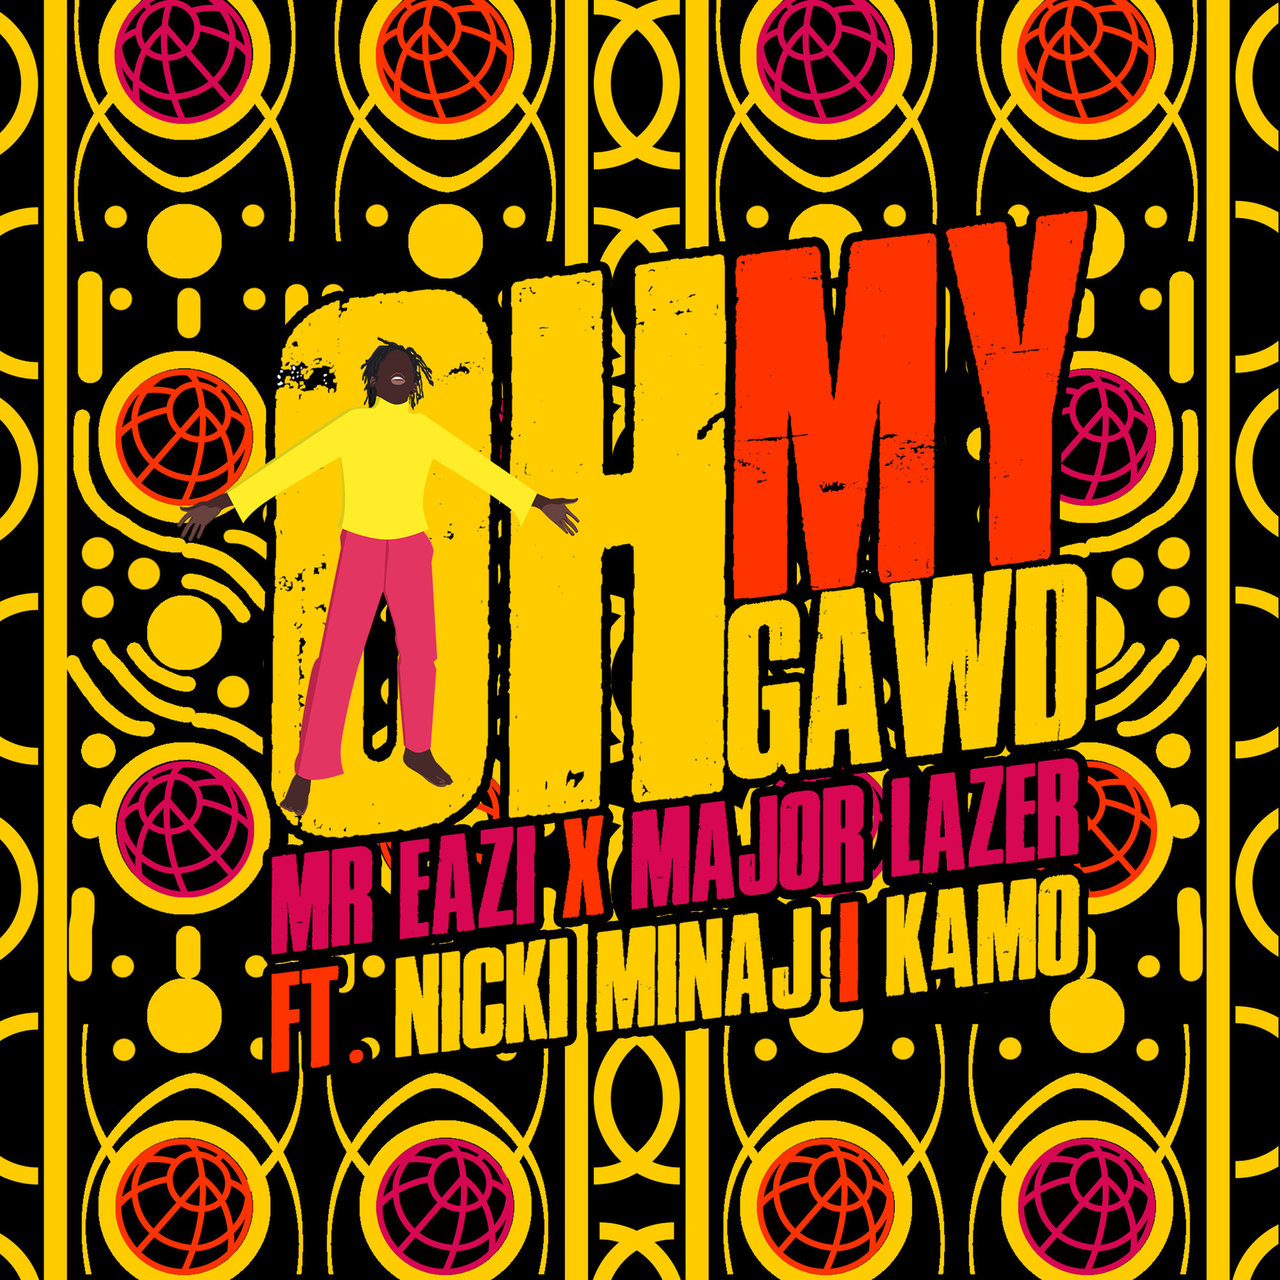 Major Lazer and Mr Eazi - Oh My Gawd (ft. Nicki Minaj and K4mo) (Cover)